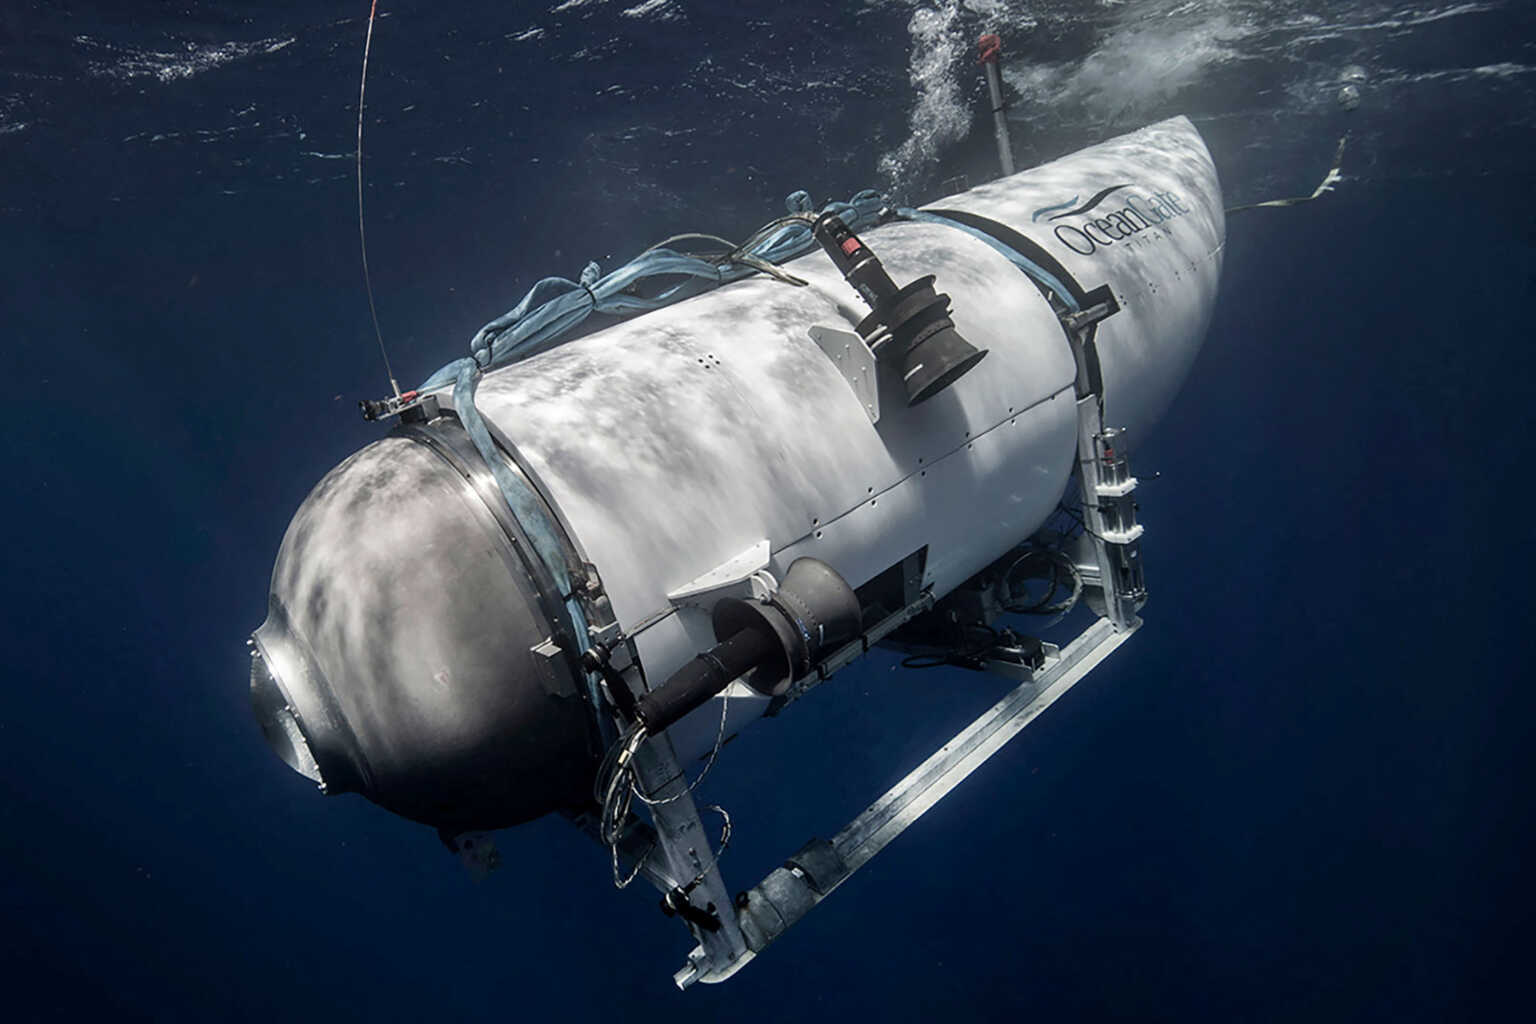 Τιτανικός: Ακούστηκαν ήχοι από το βυθό, βρέθηκε λευκό αντικείμενο – Ελπίδες για το εξαφανισμένο υποβρύχιο